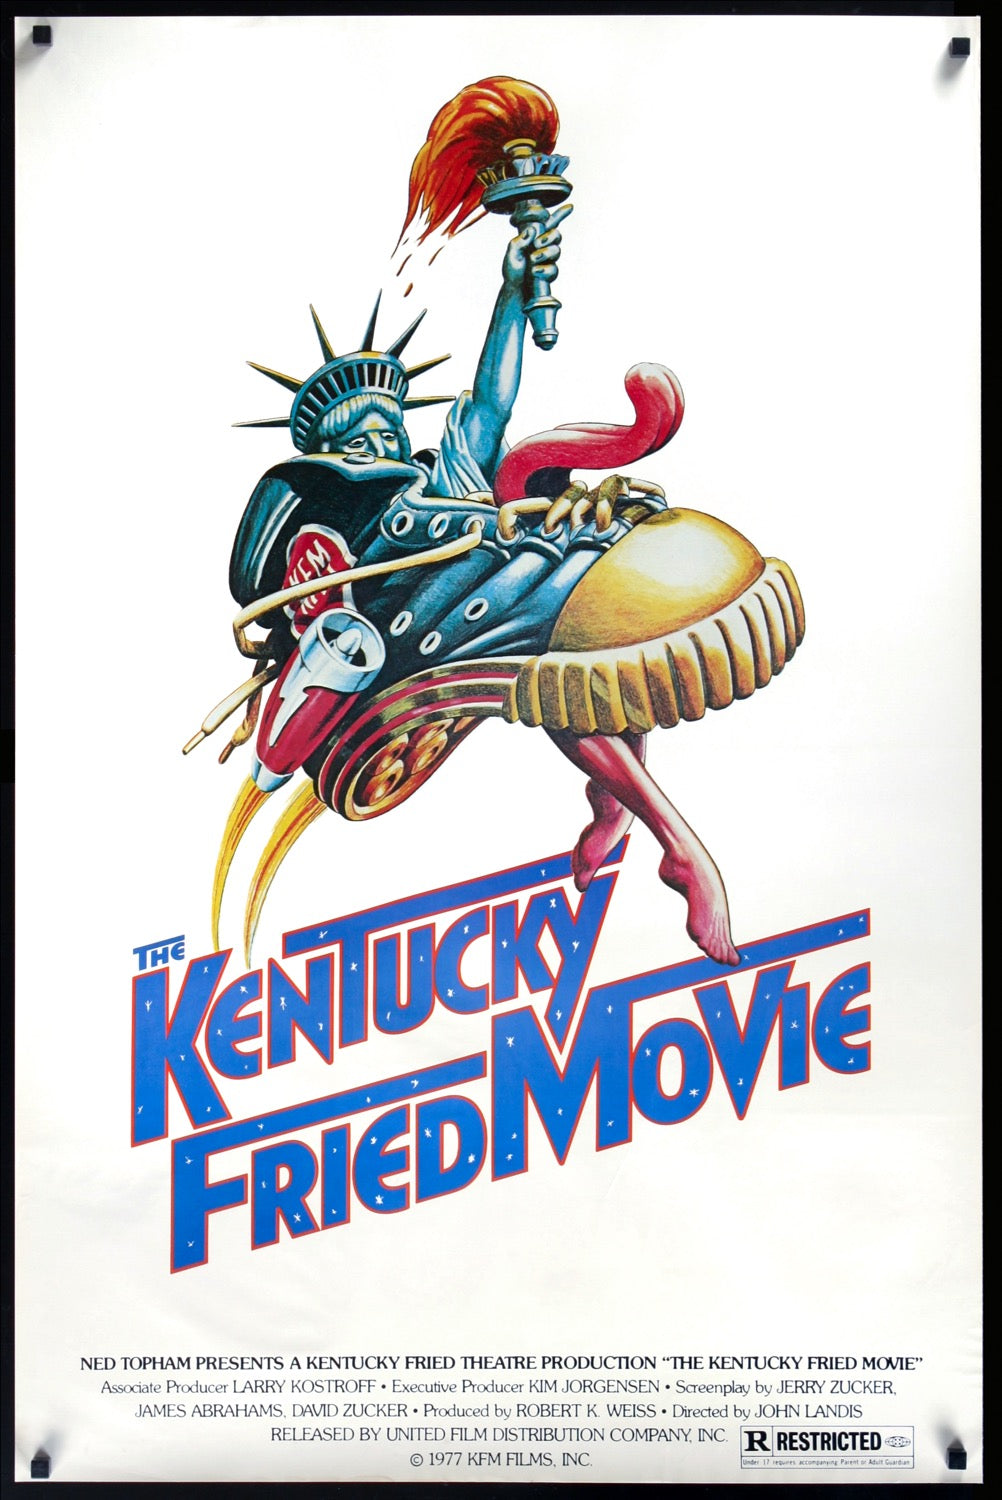 Kentucky Fried Movie (1977) original movie poster for sale at Original Film Art